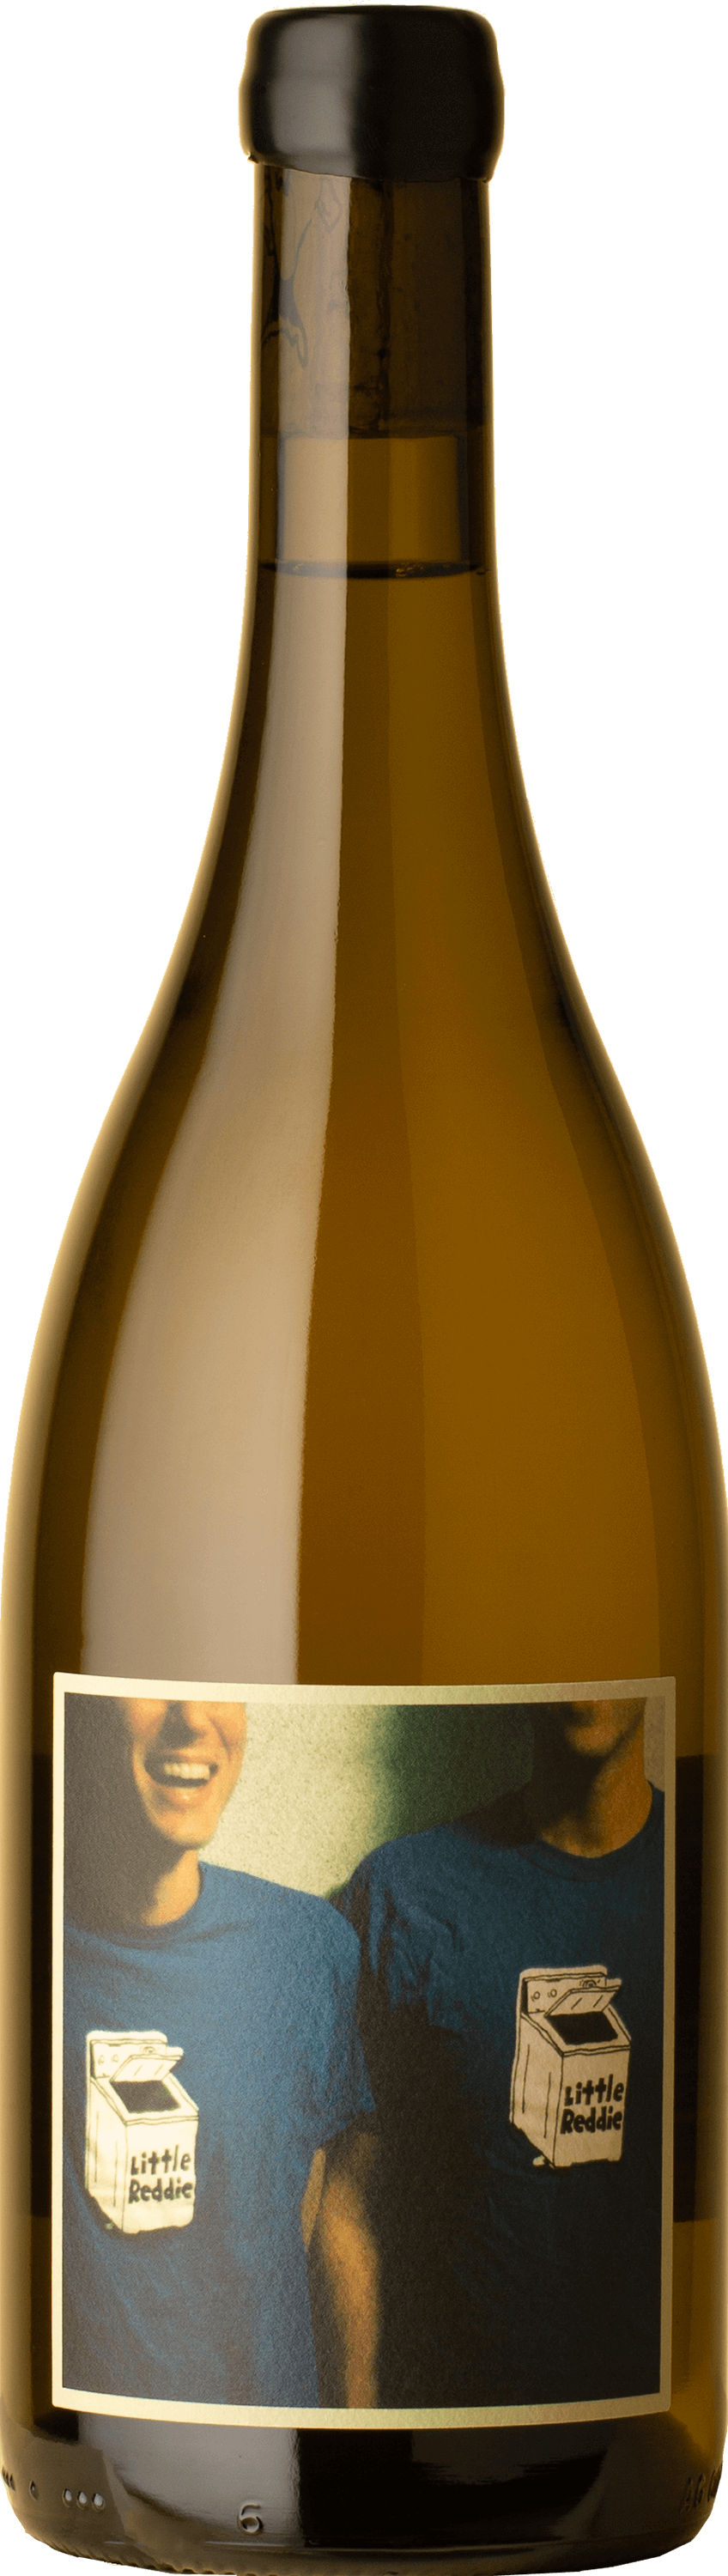 Little Reddie - Malmsbury Chardonnay 2019 White Wine